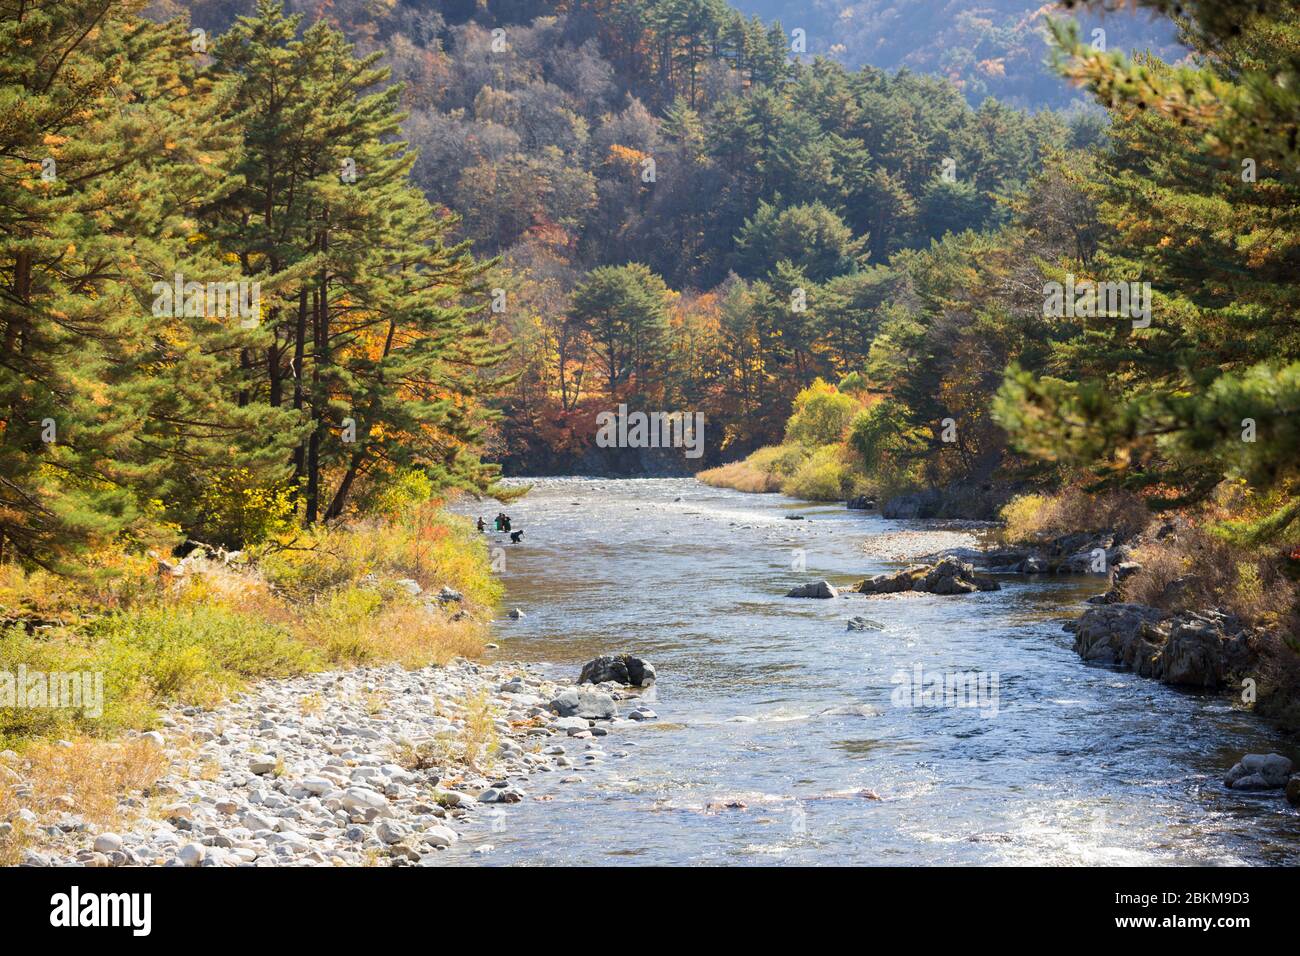 Autumn forest river landscape, South Korea Stock Photo